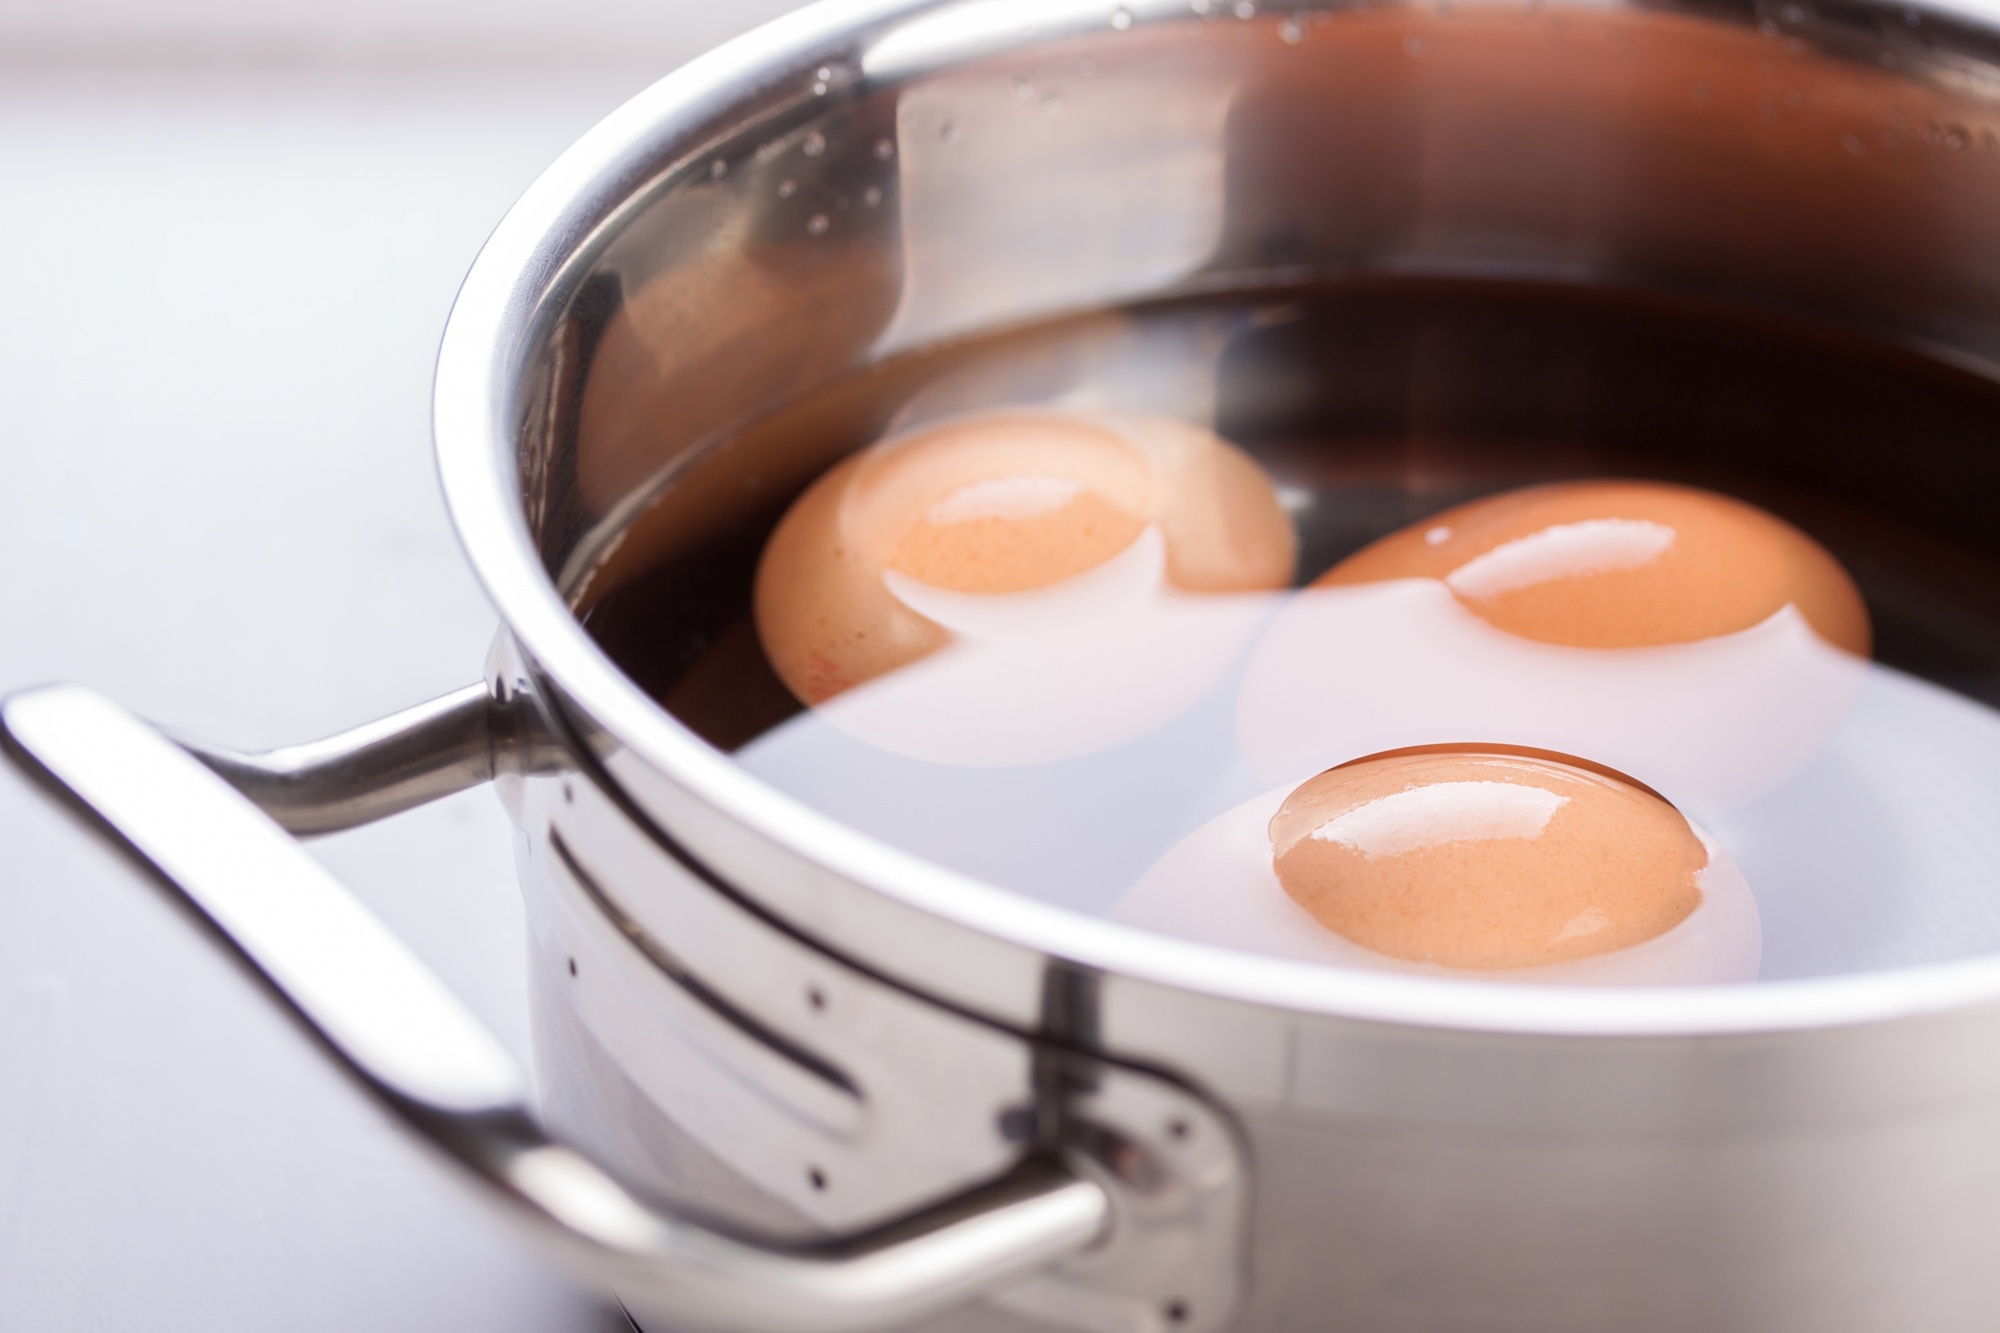 تخم مرغ آب پز یا املت؛ کدام بهتر است؟ | نگاهی به ارزش غذایی این ماده غذایی مغذی